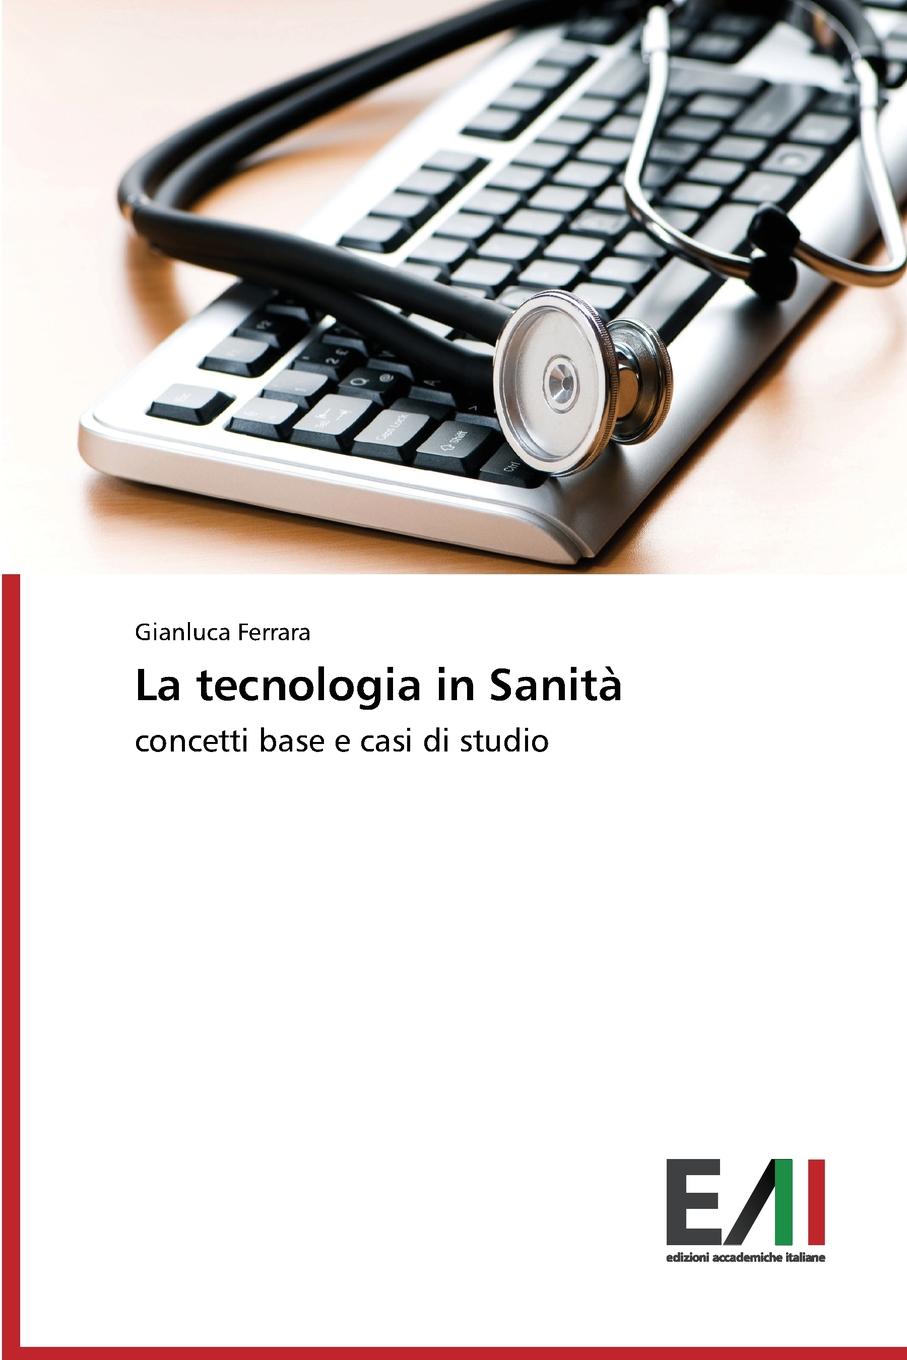 Ferrara Gianluca La tecnologia in Sanita